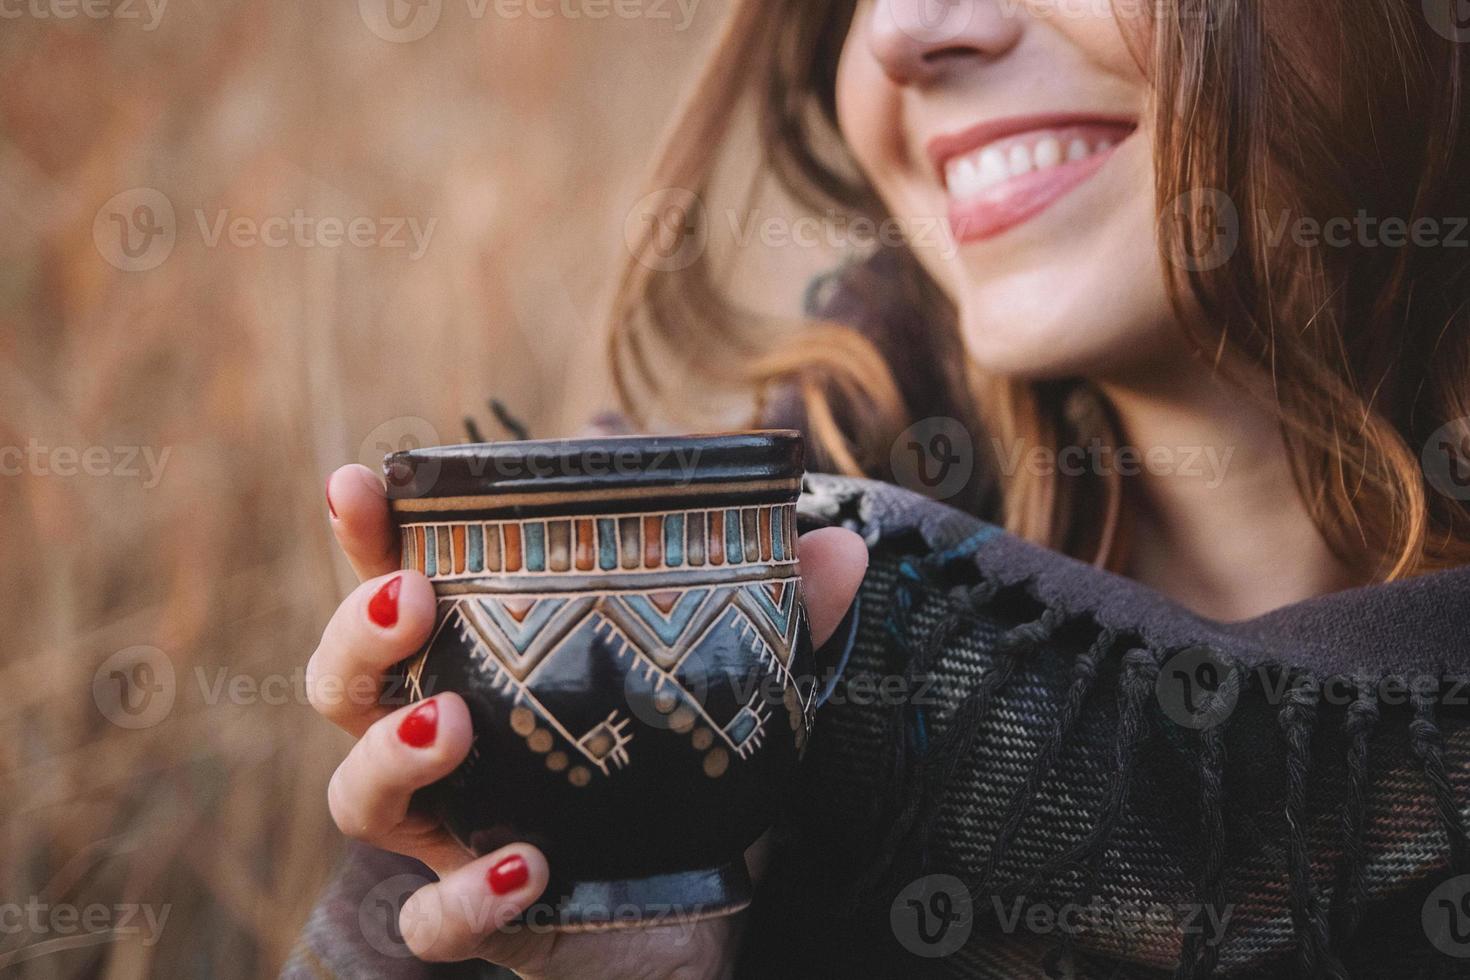 belle femme sourit et tient une tasse avec un verre photo